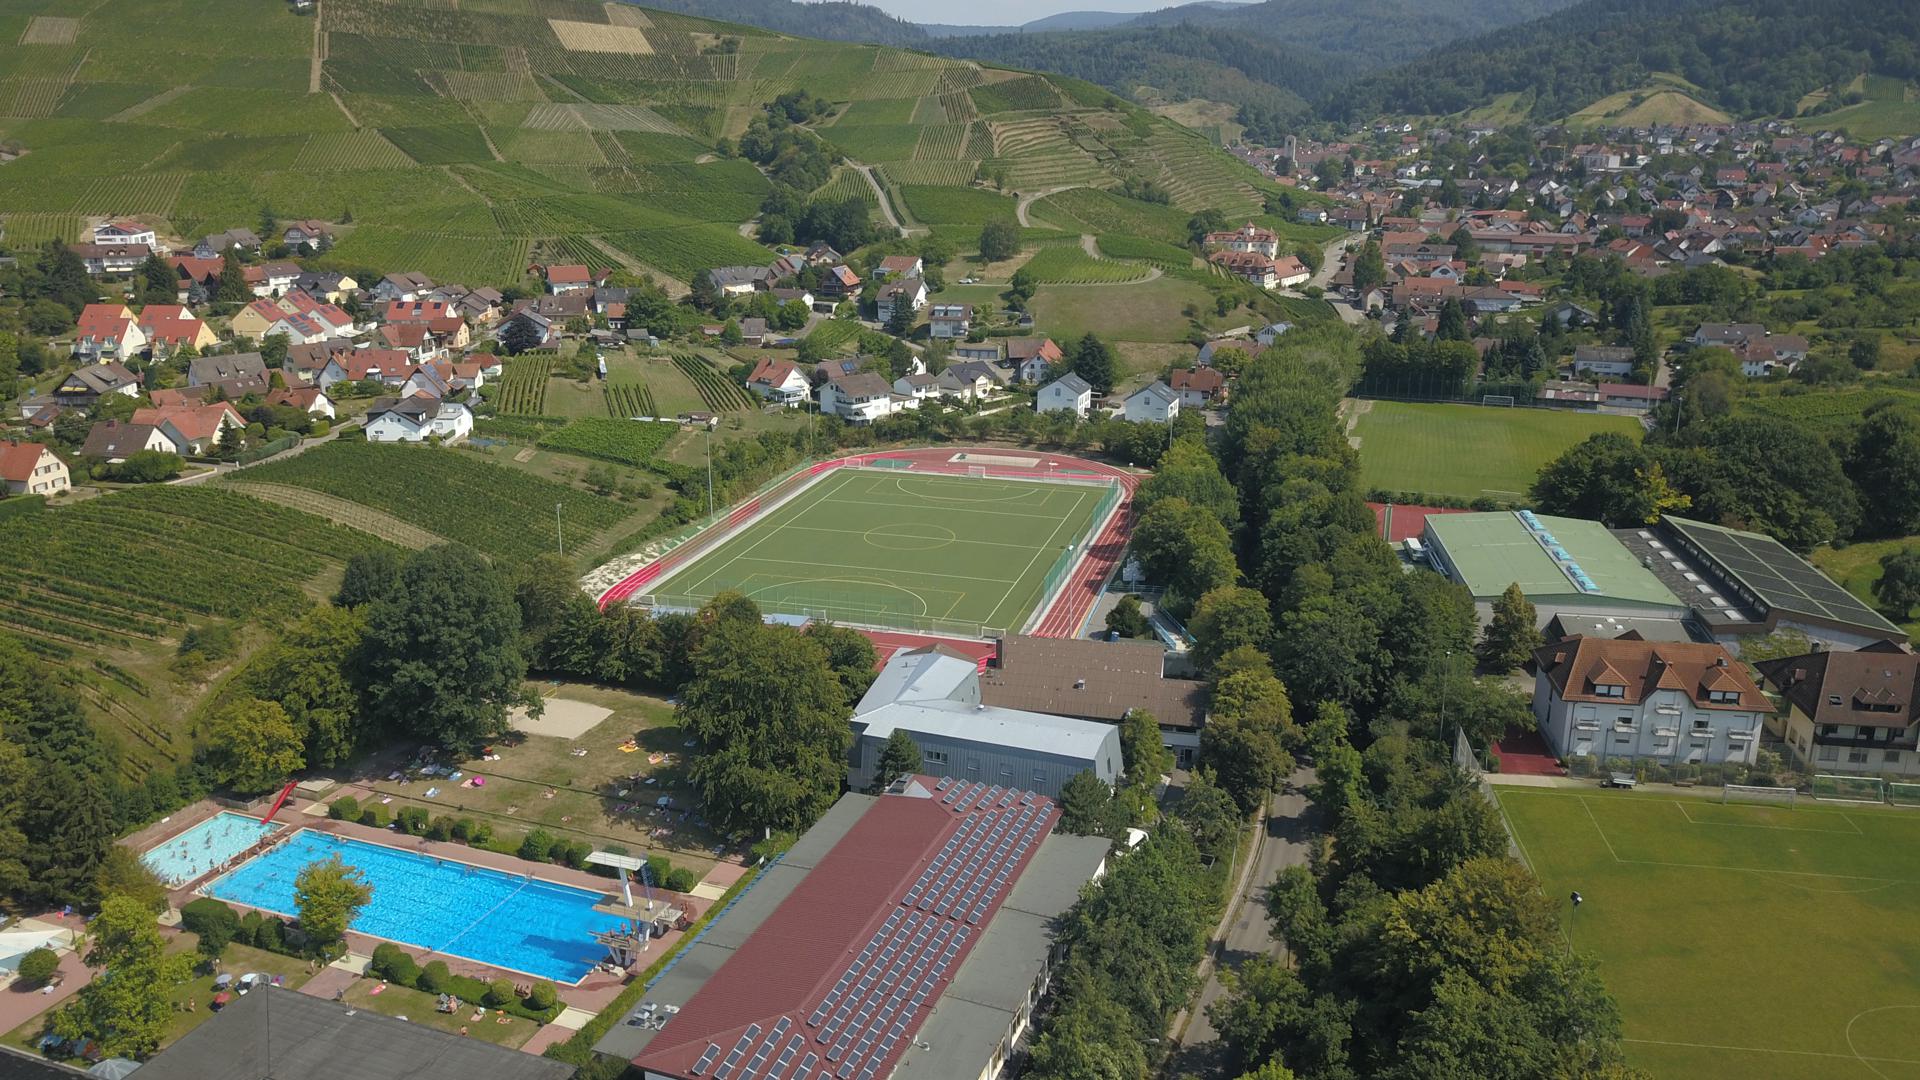 Eingebettet in einer reizvollen Naturlandschaft liegt die Sportschule Steinbach. Nach der Eröffnung im Juli 1957 wurde sie zwischen 1962 und 2002 viermal erweitert und modernisiert.